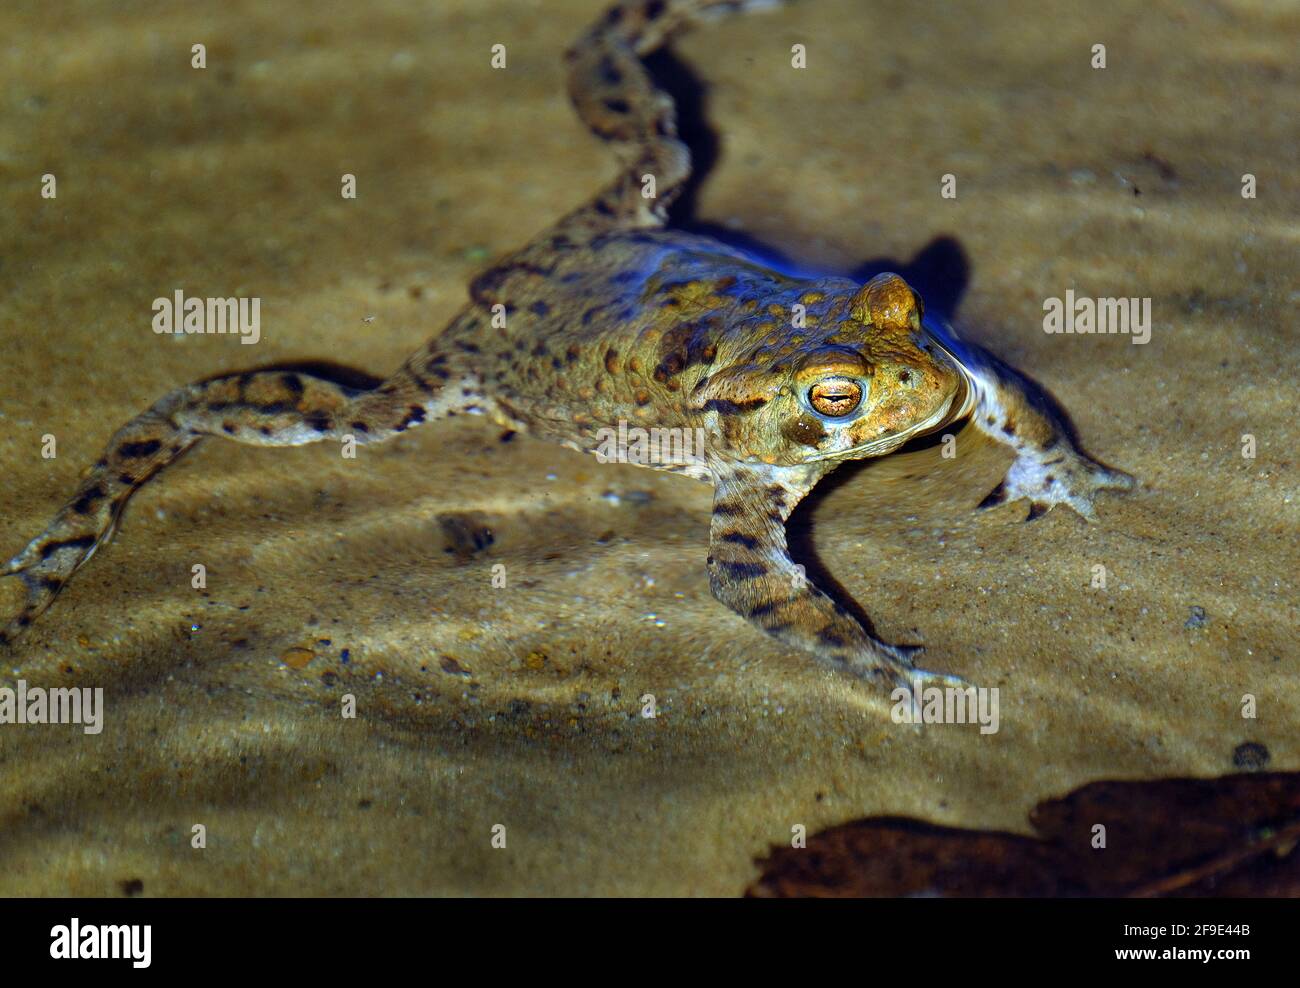 La grenouille commune, également connue sous le nom de grenouille commune européenne, grenouille brune européenne ou grenouille herbeuse européenne, est un amphibien semi-aquatique. Banque D'Images